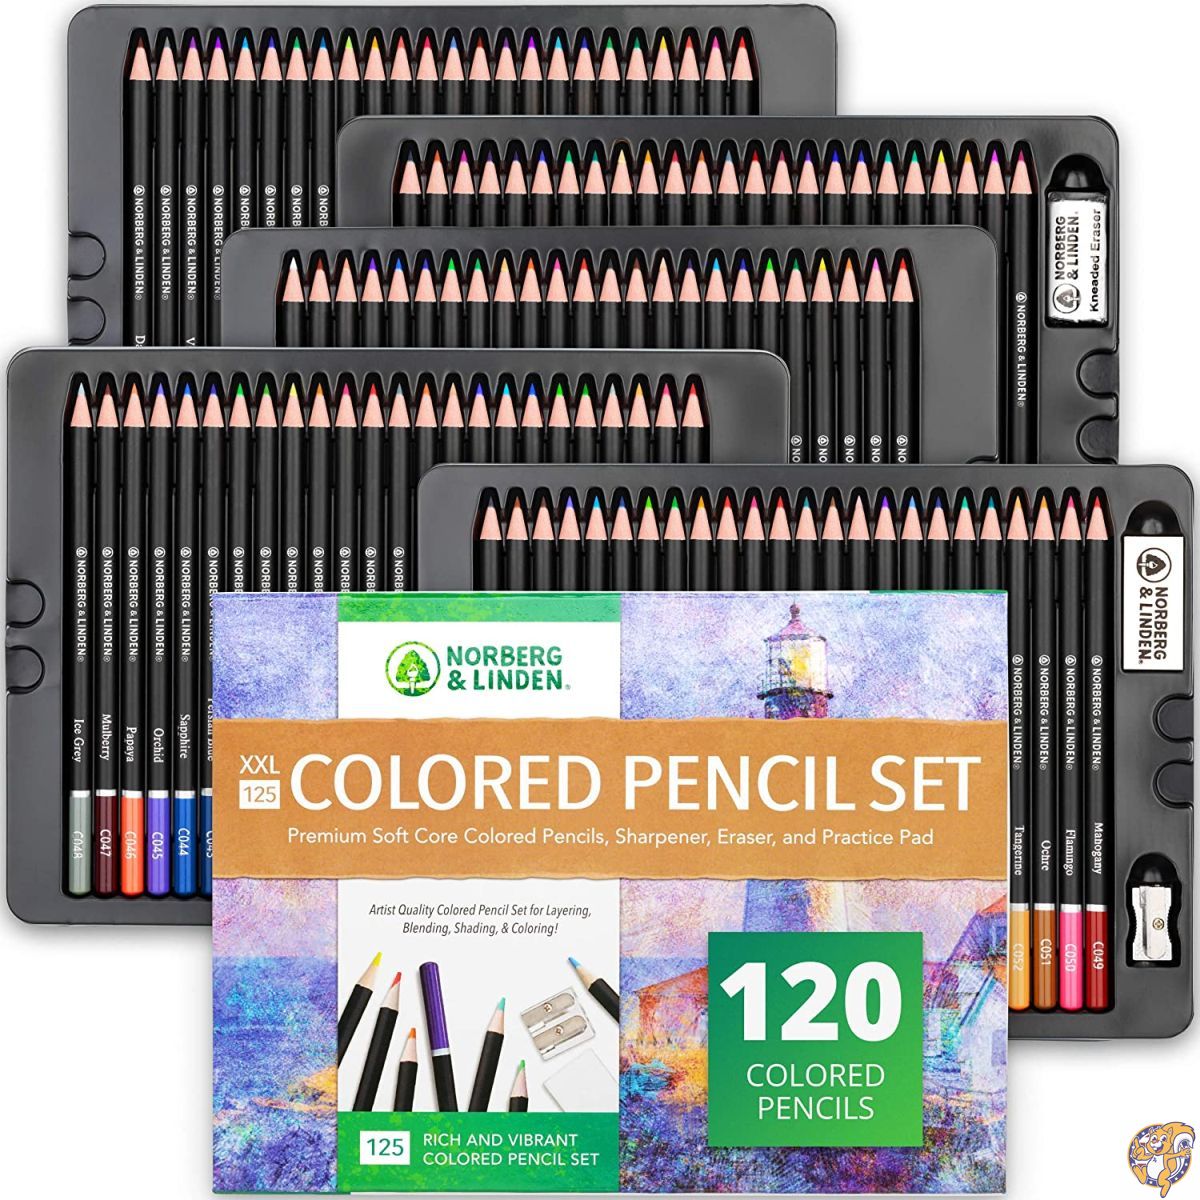 Norberg & Linden XXL 125色鉛筆セット - アート鉛筆120本、ドローイングペーパーパッド、消しゴム2本、鉛筆削り2本 - 送料無料